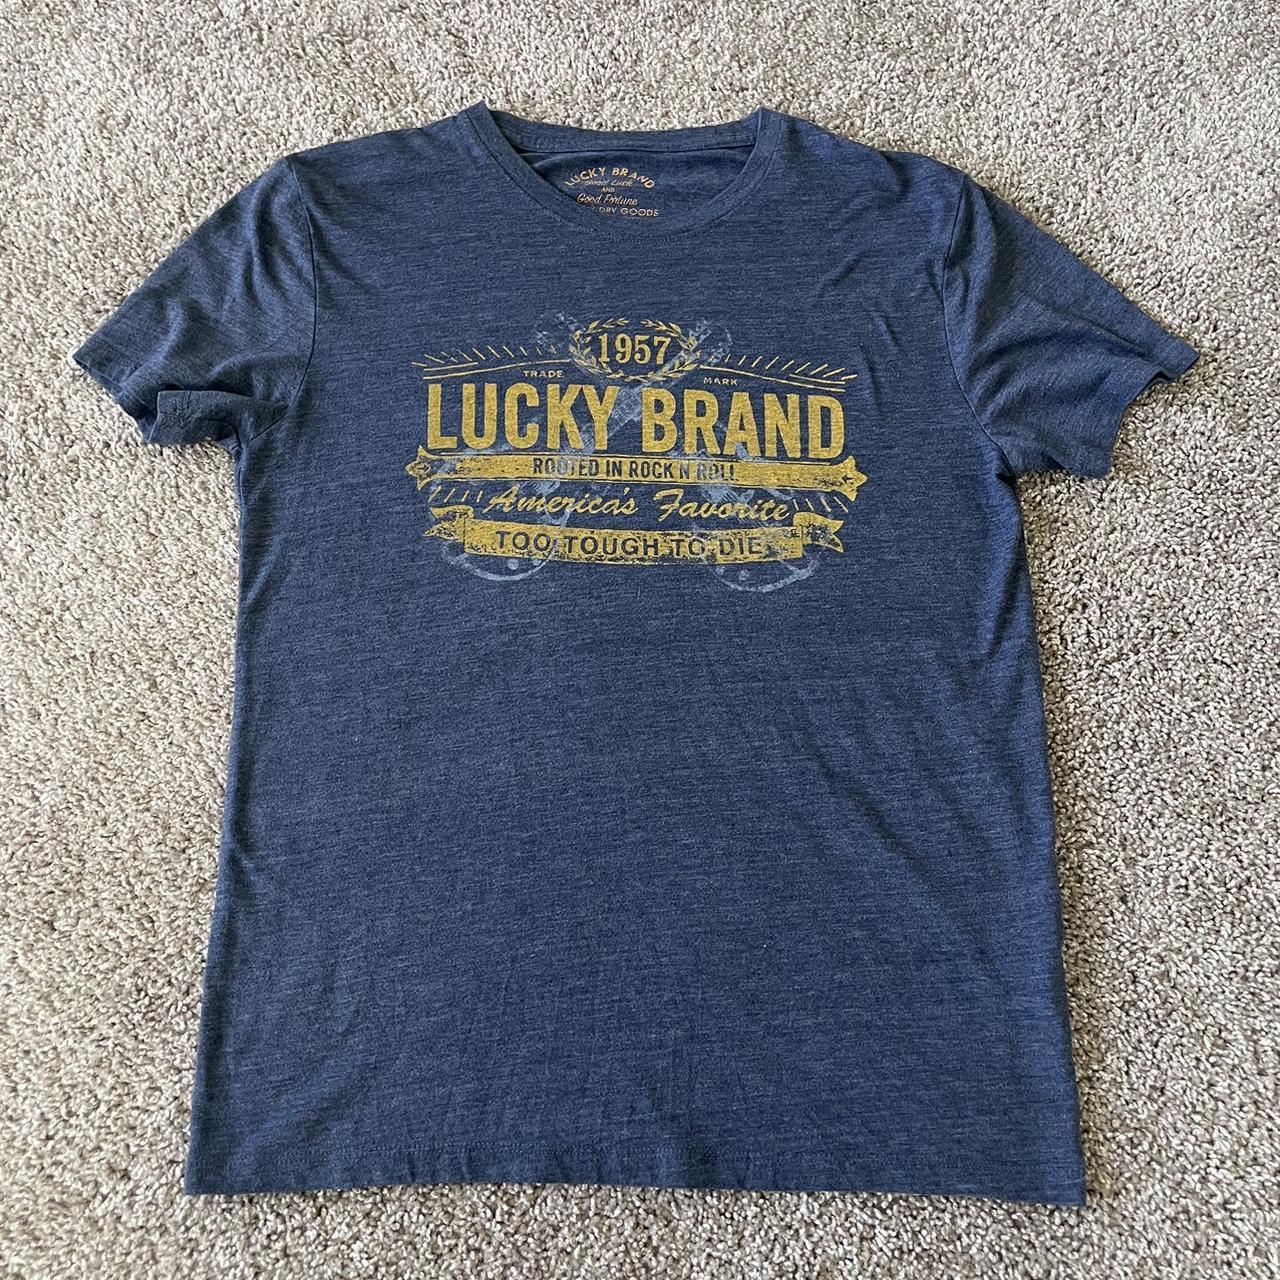 Lucky brand too tough - Gem